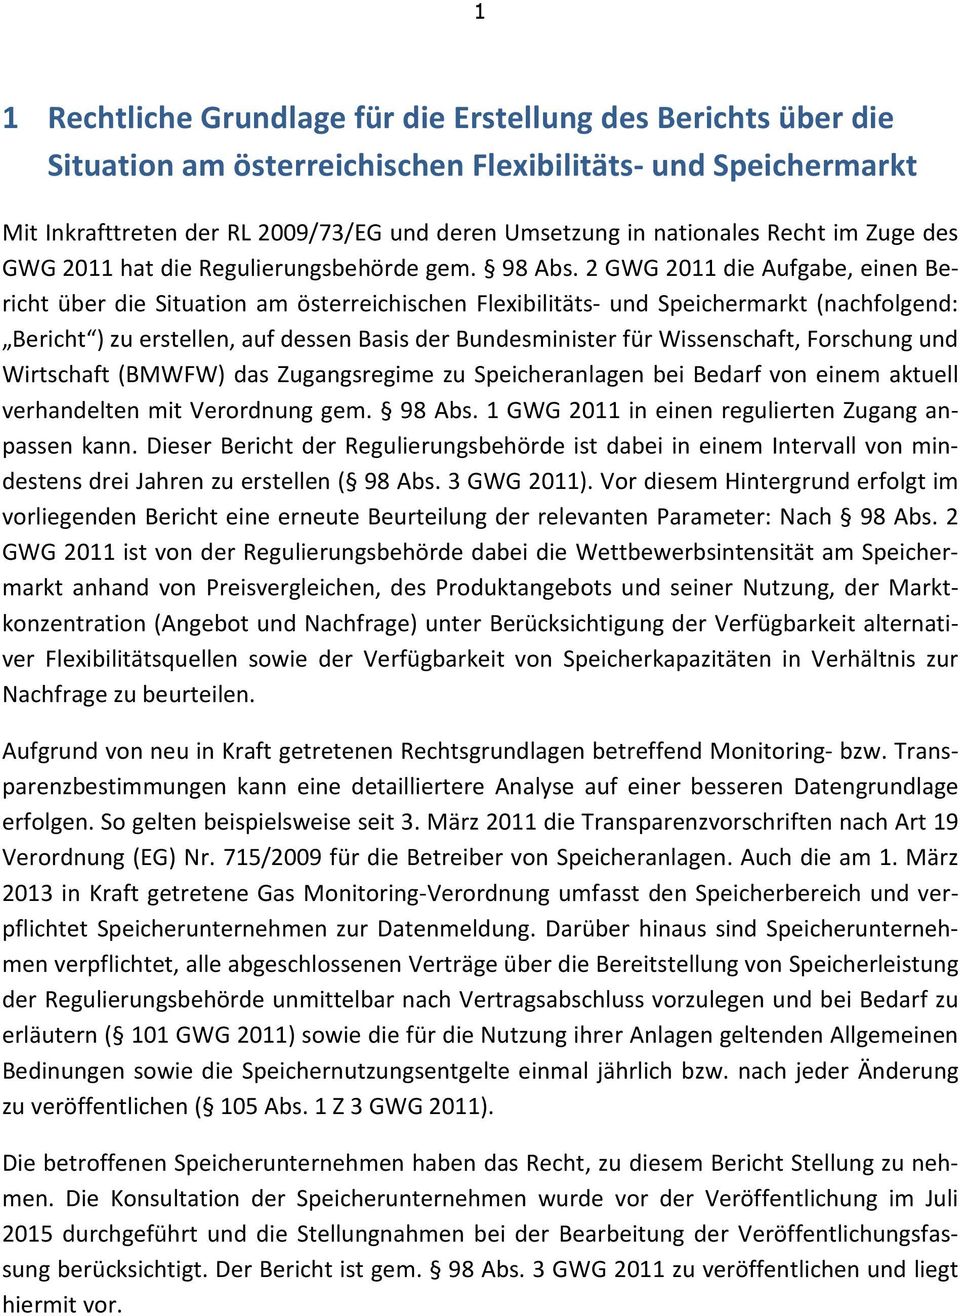 2 GWG 2011 die Aufgabe, einen Bericht über die Situation am österreichischen Flexibilitäts- und Speichermarkt (nachfolgend: Bericht ) zu erstellen, auf dessen Basis der Bundesminister für